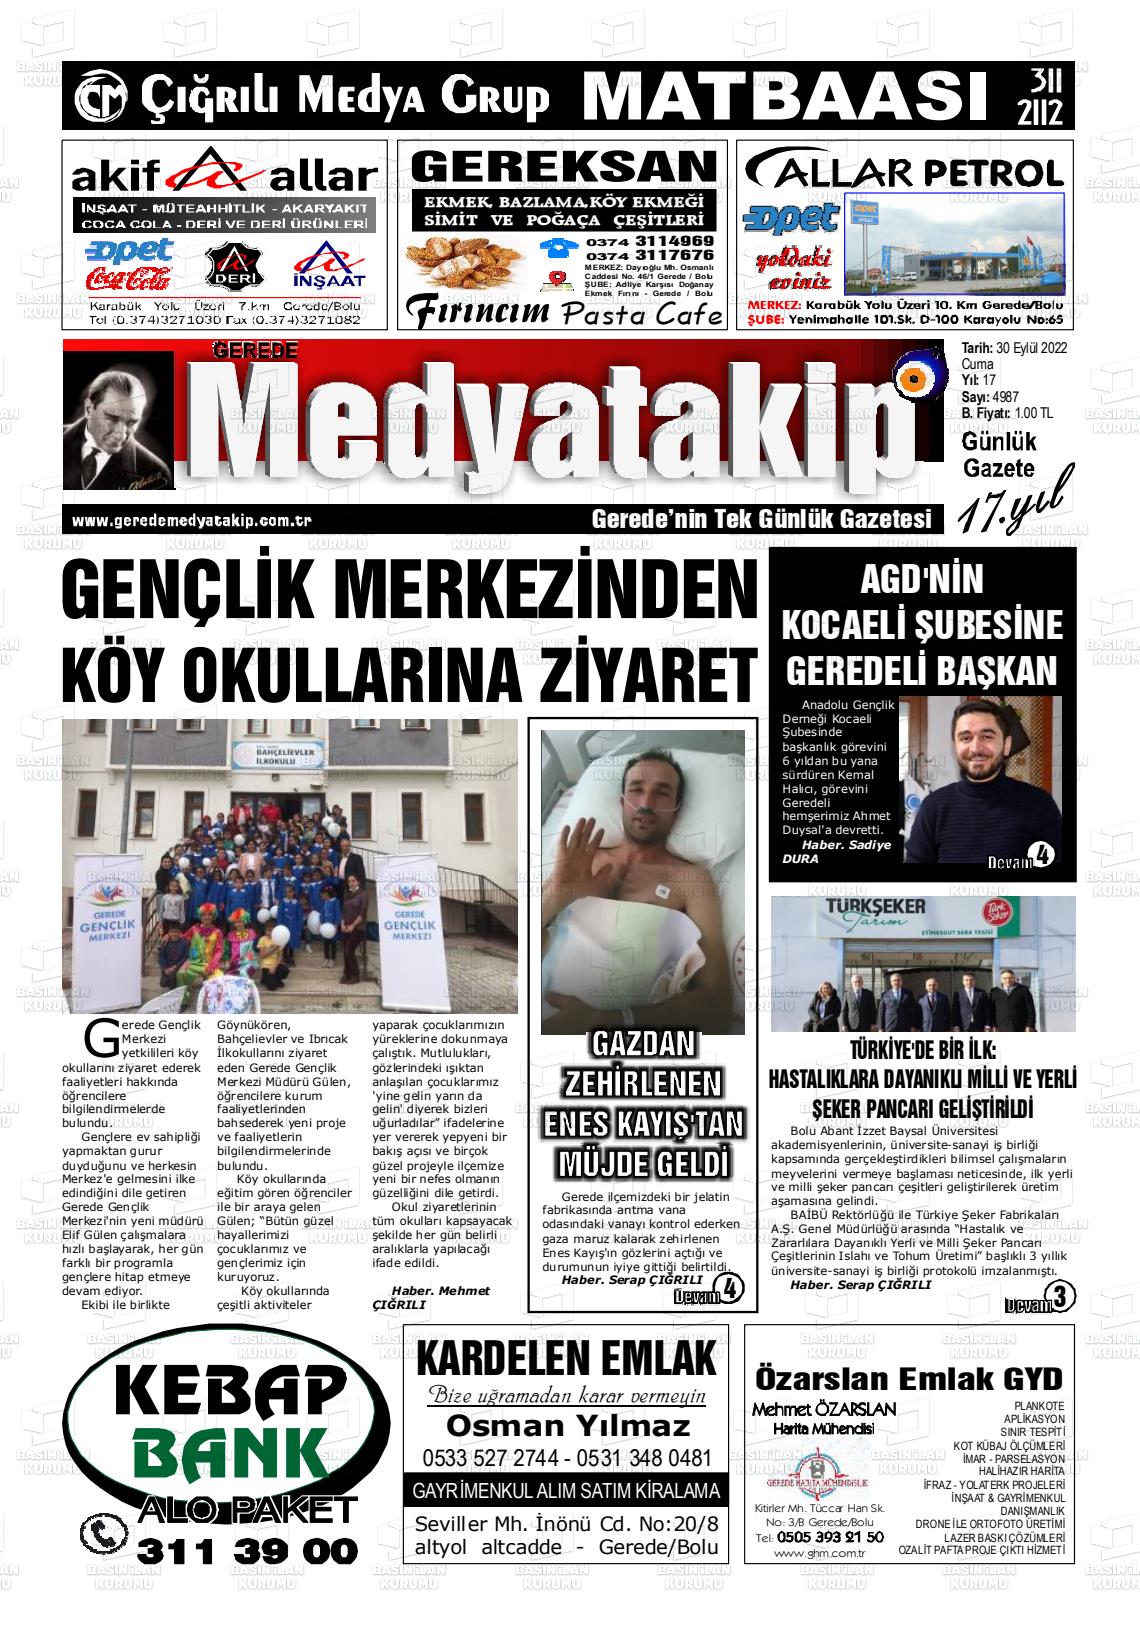 30 Eylül 2022 Gerede Medya Takip Gazete Manşeti